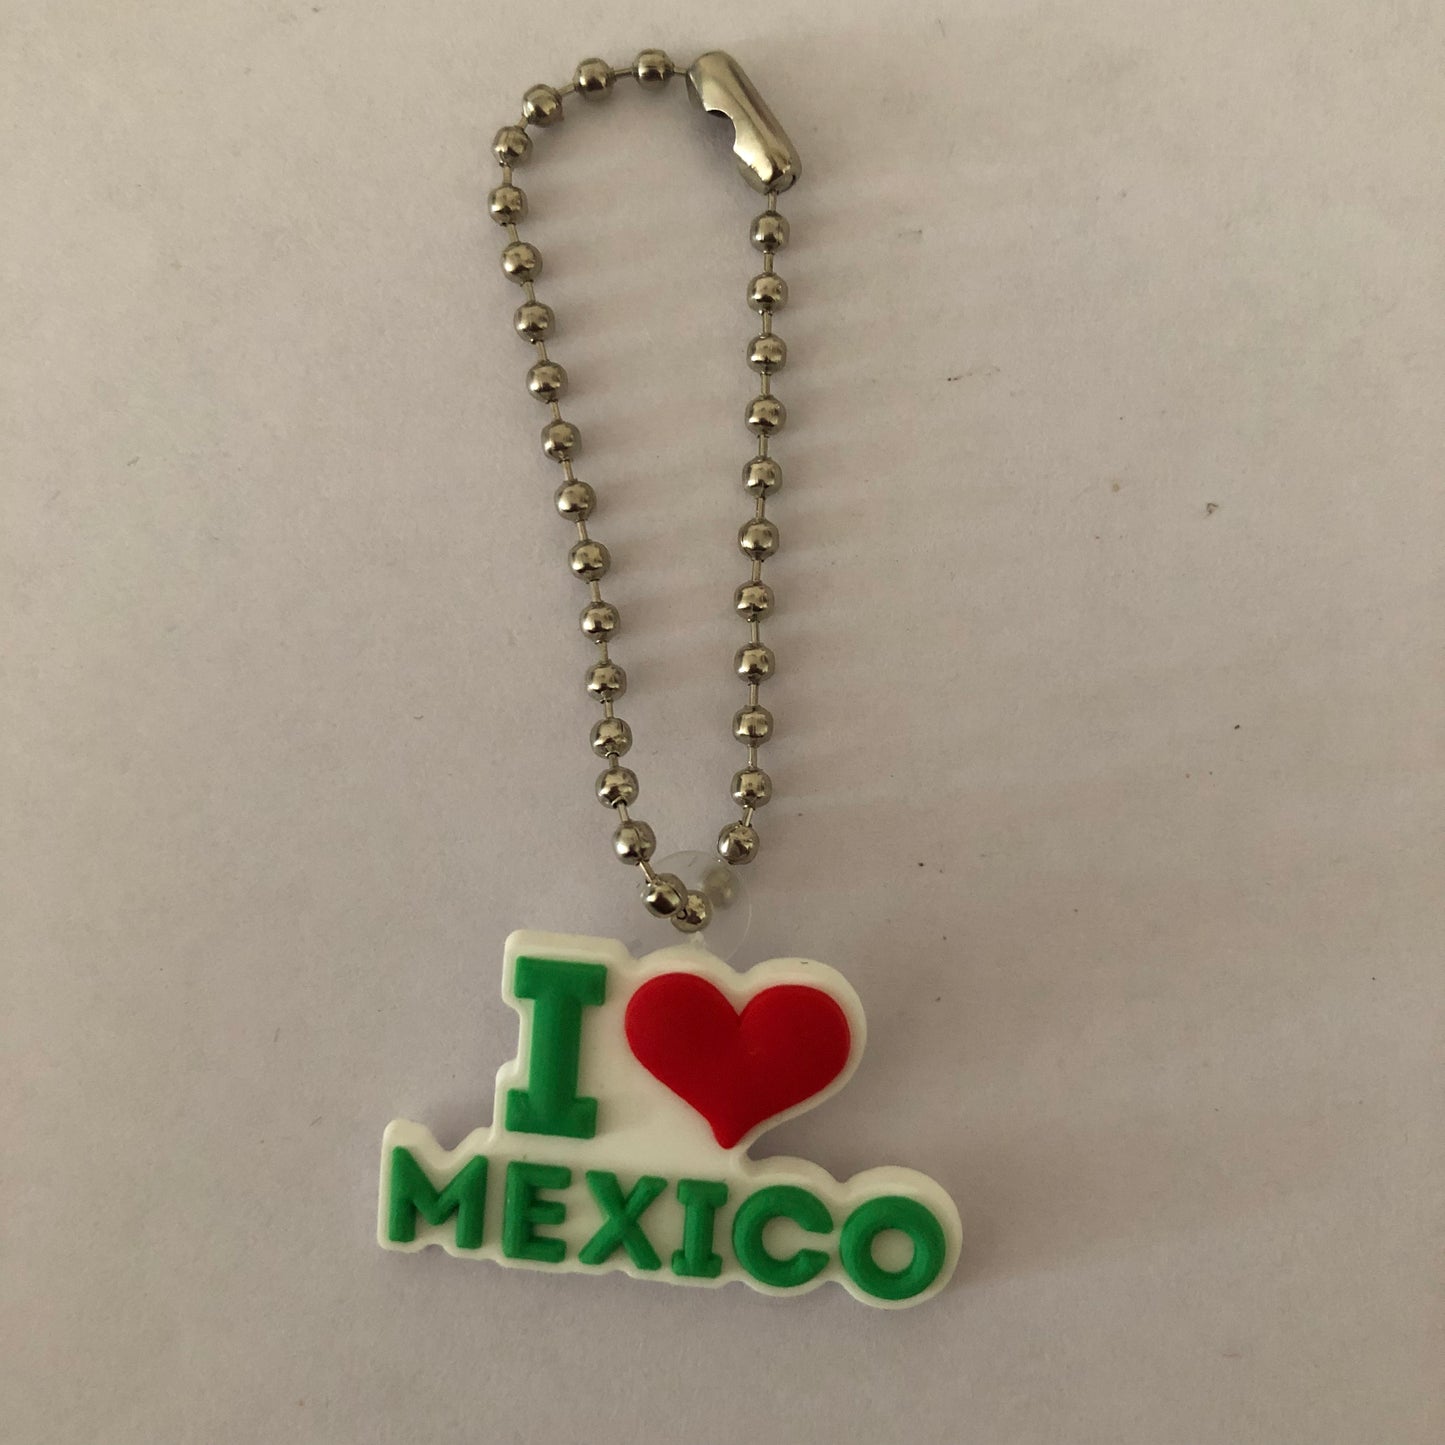 I love Mexico keychain